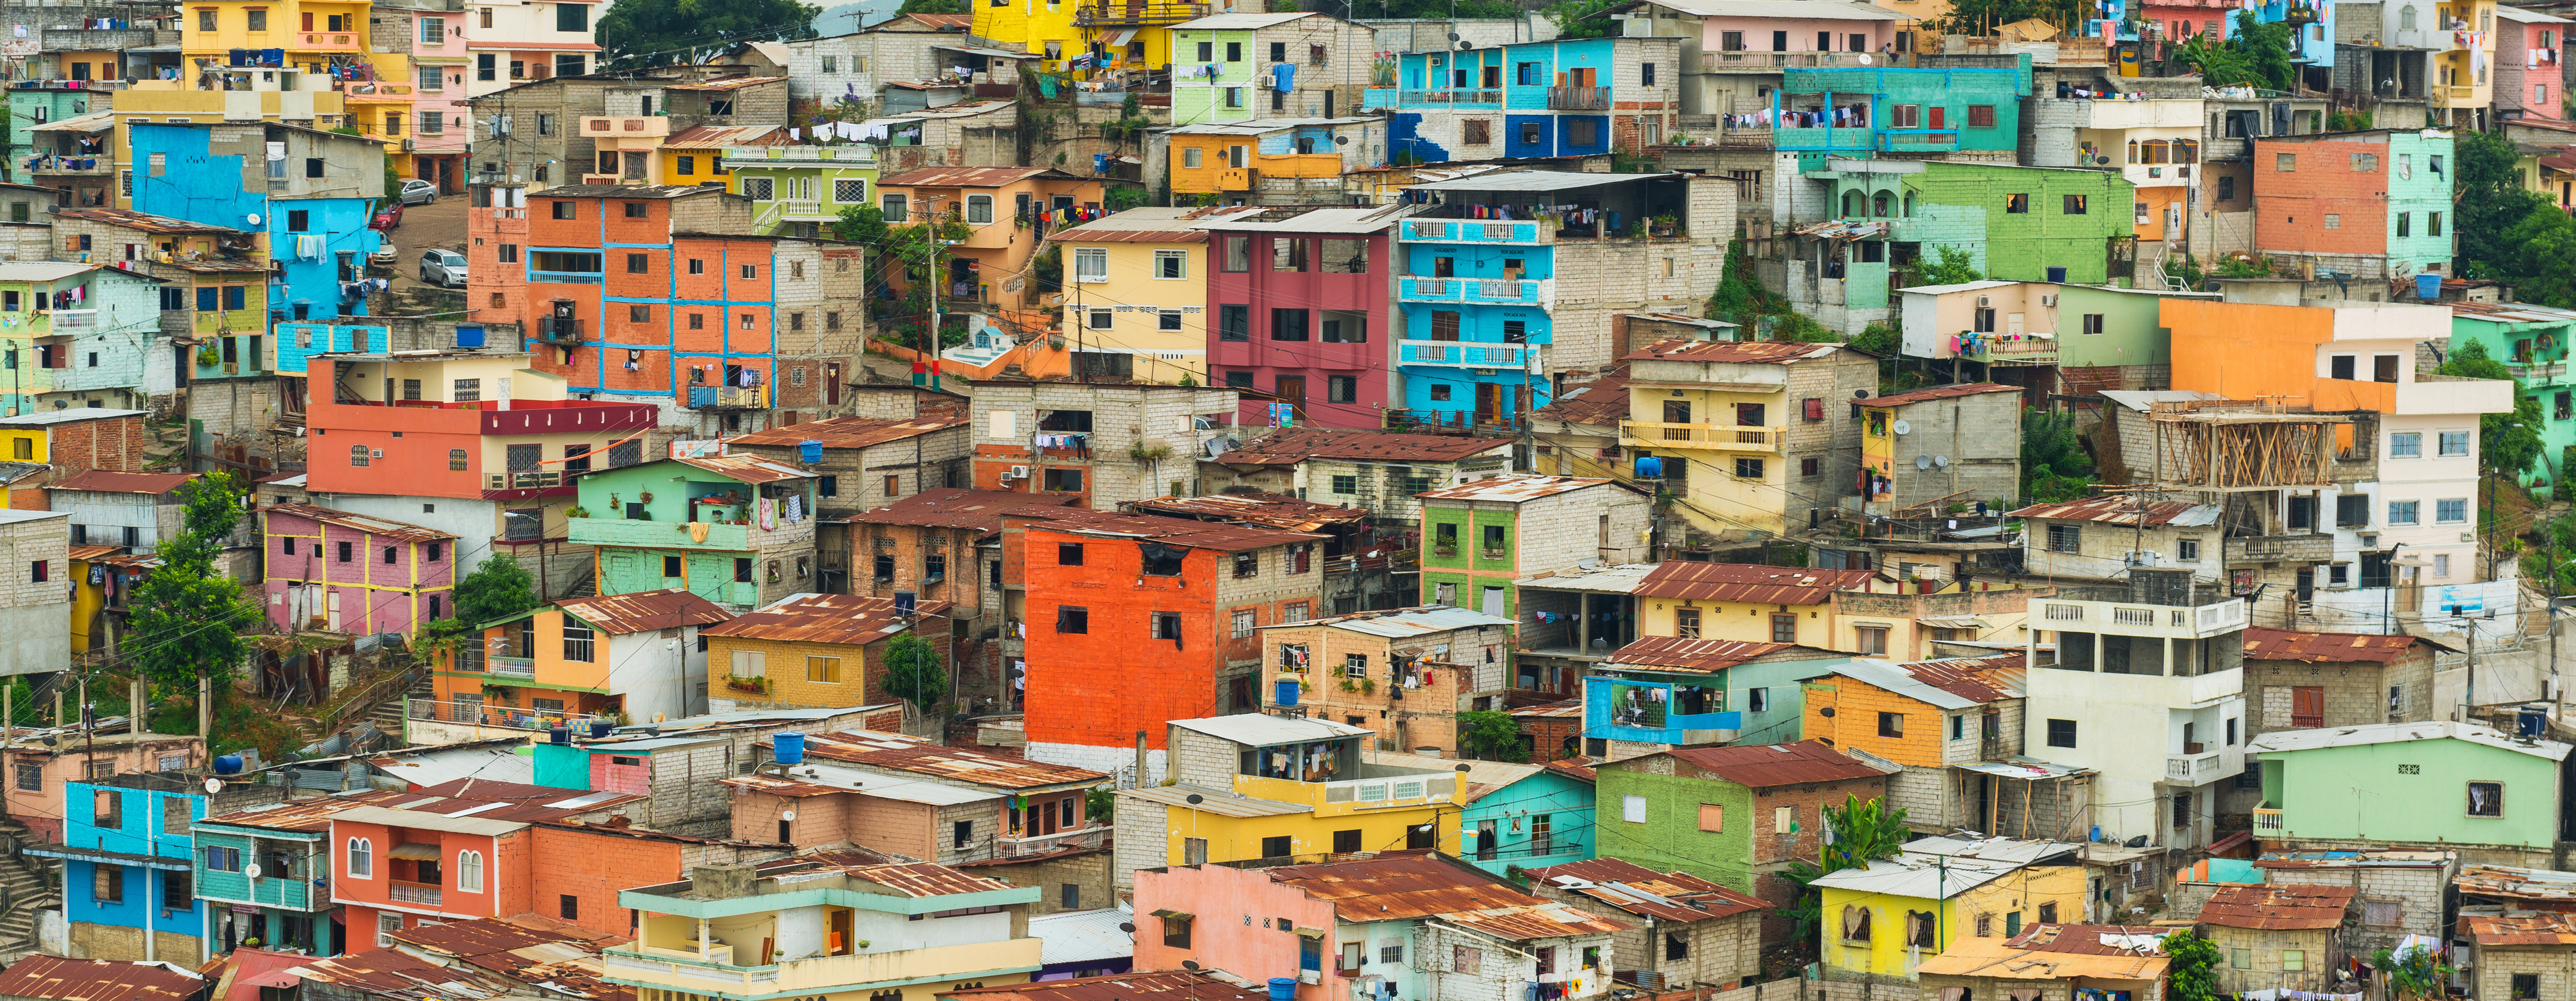 Latin American housing